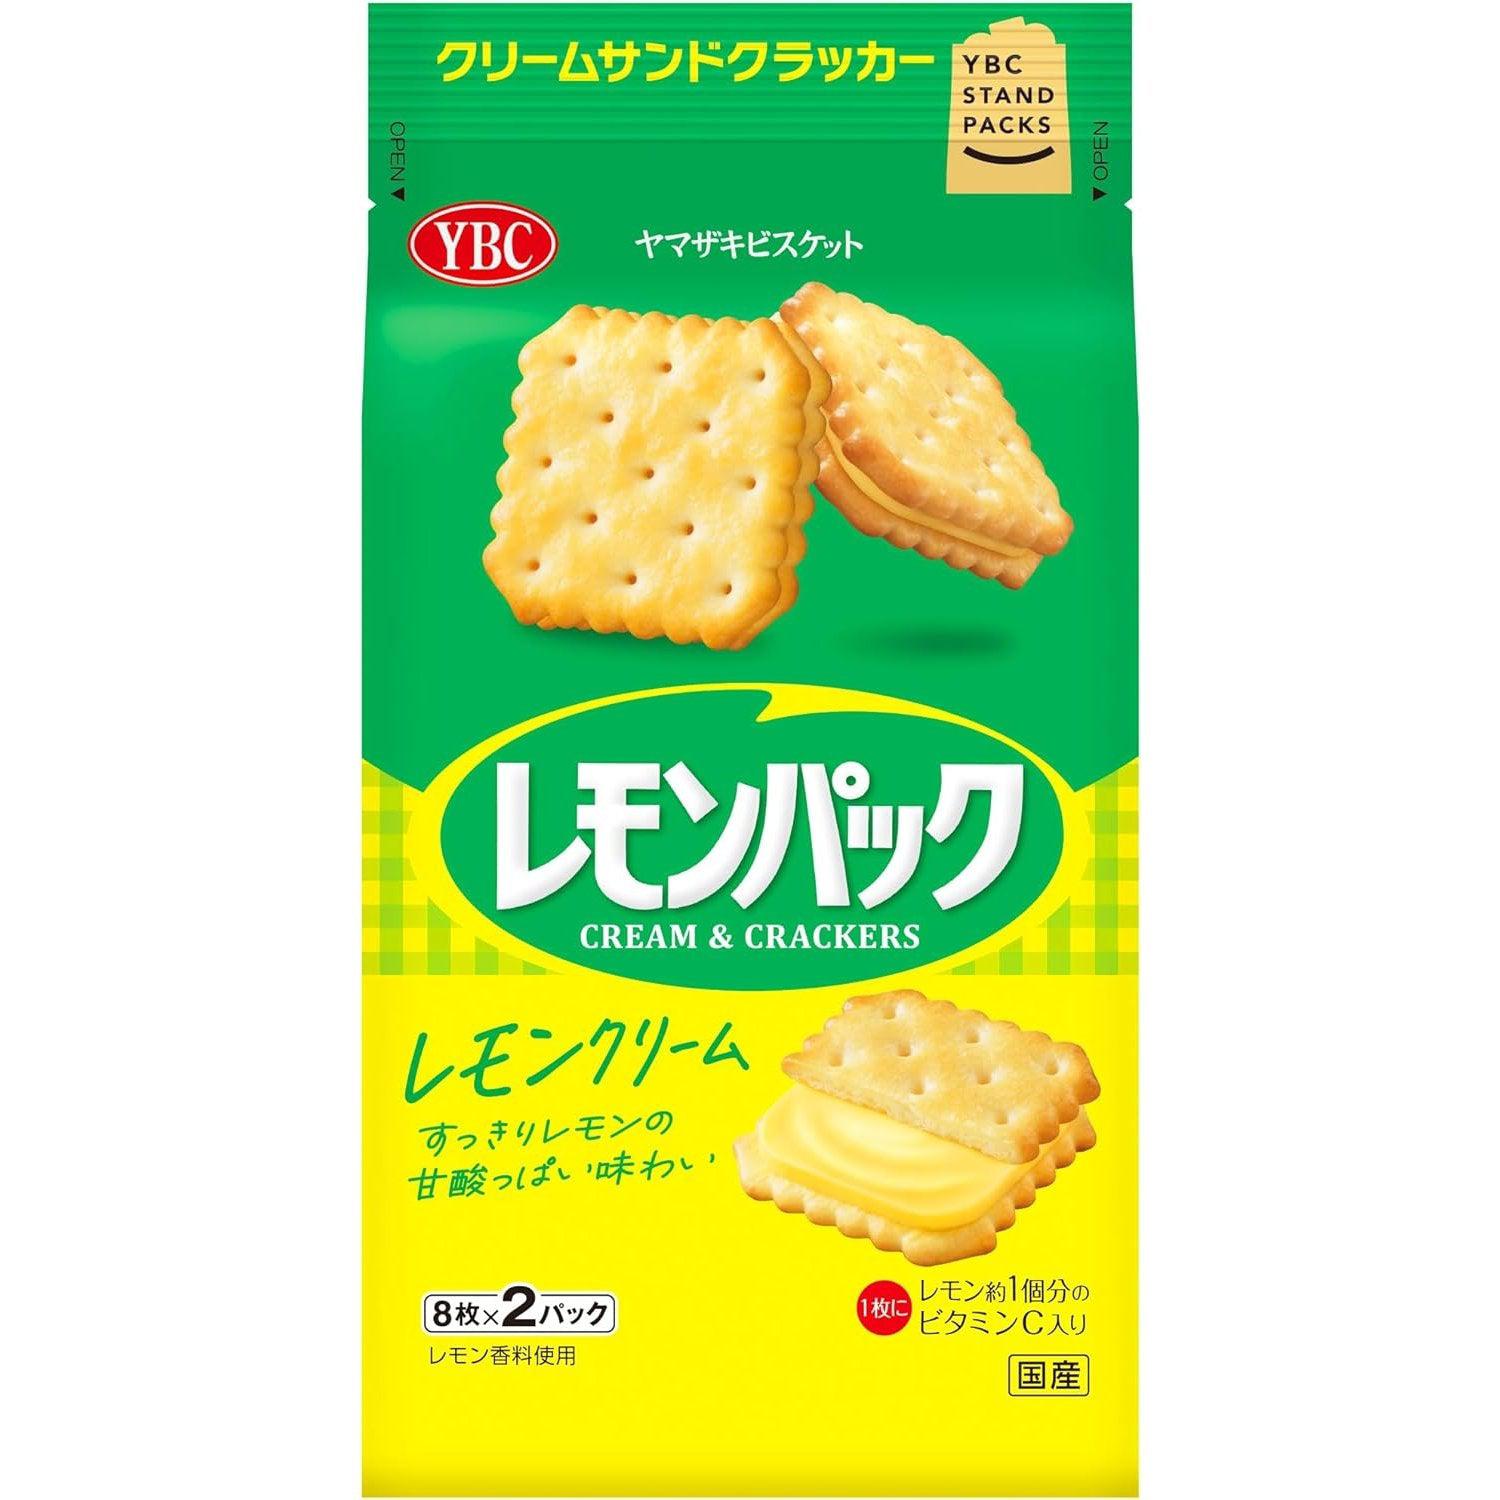 Yamazaki Lemon Pack Lemon Cream Filled Sandwich Crackers (Pack of 3)